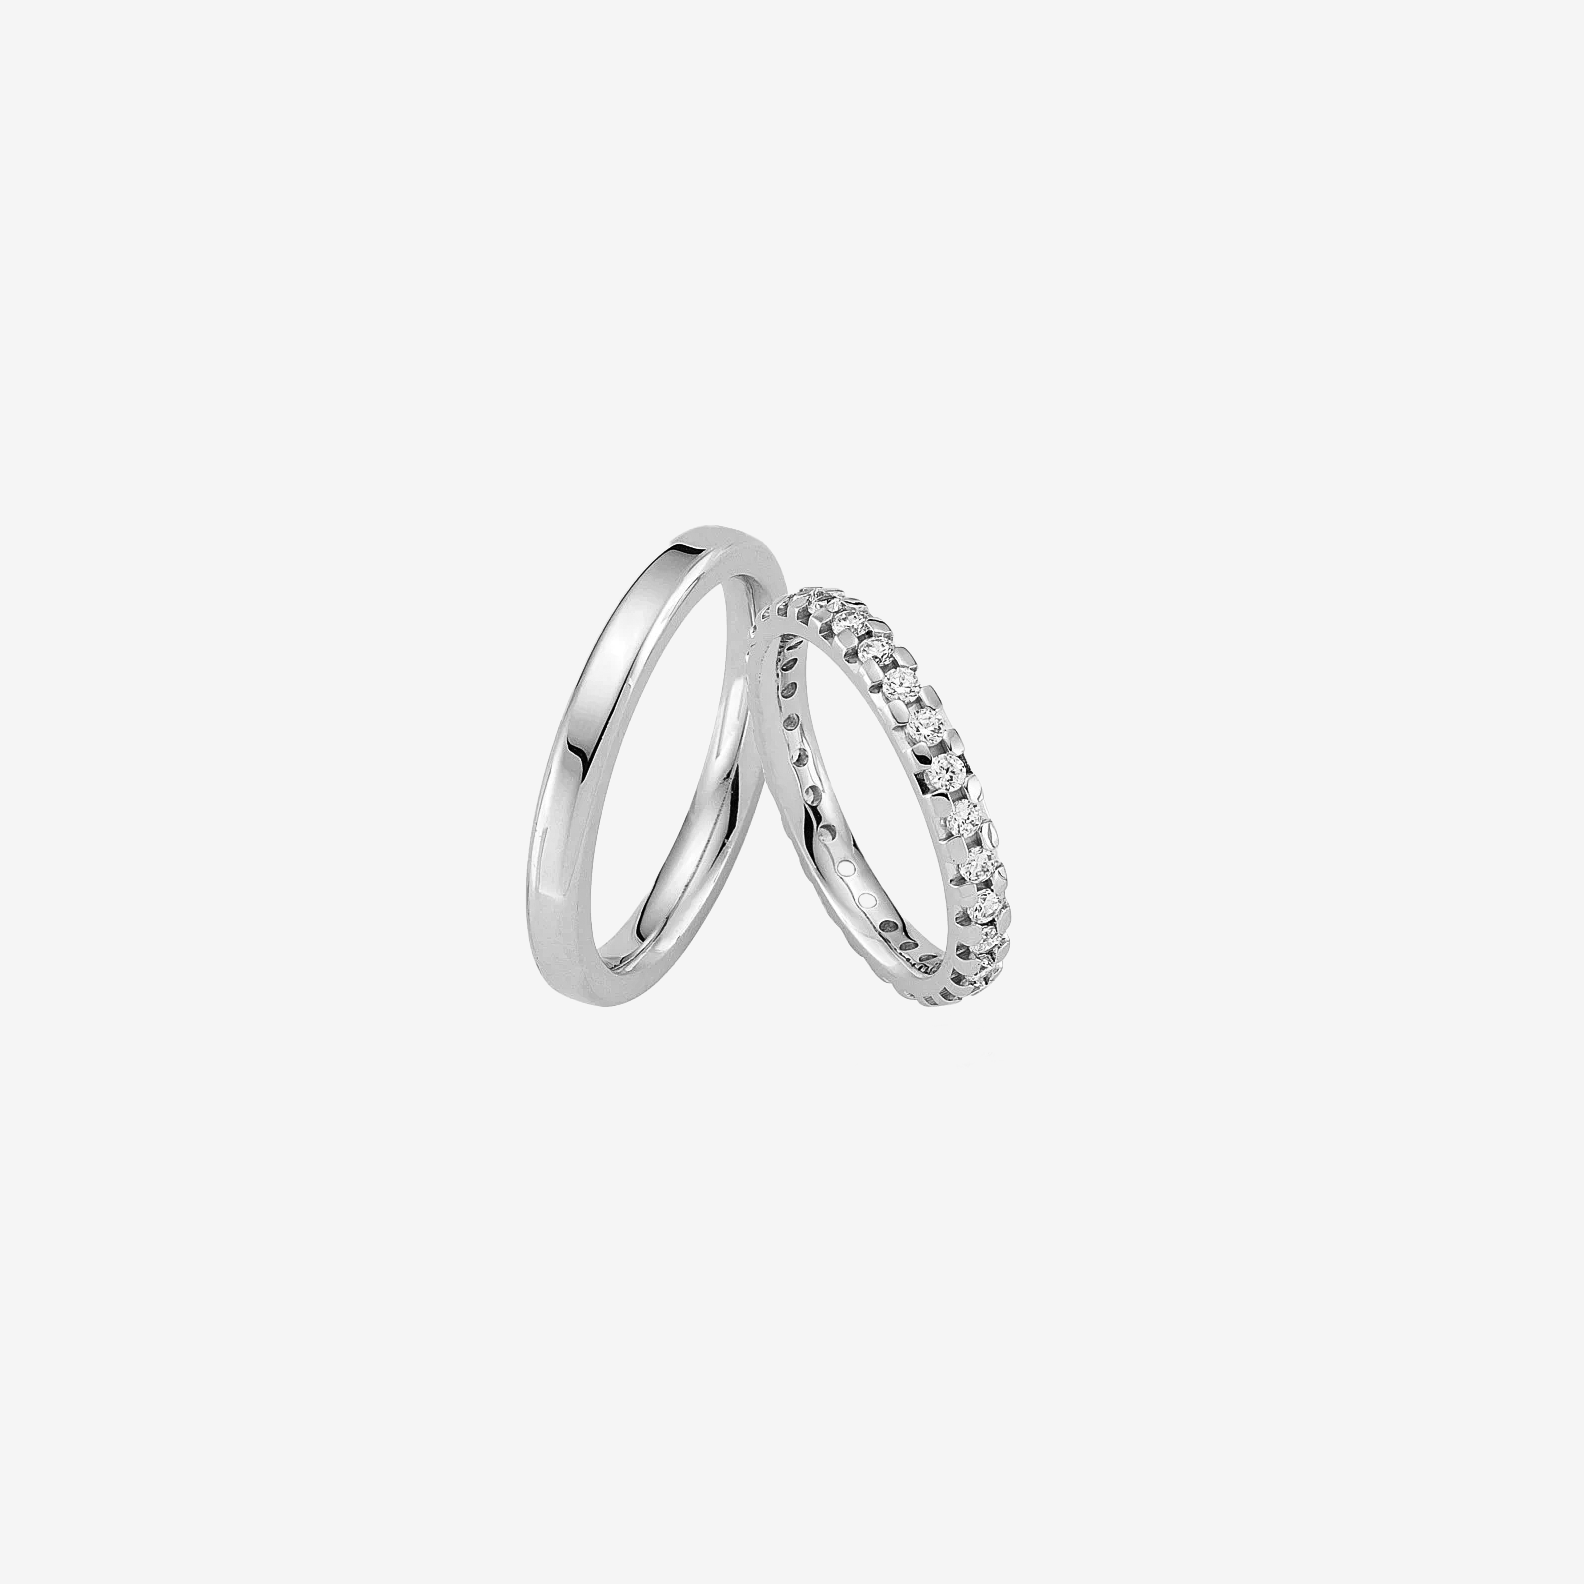 Darby Diamond Wedding Rings - White Gold - Pair